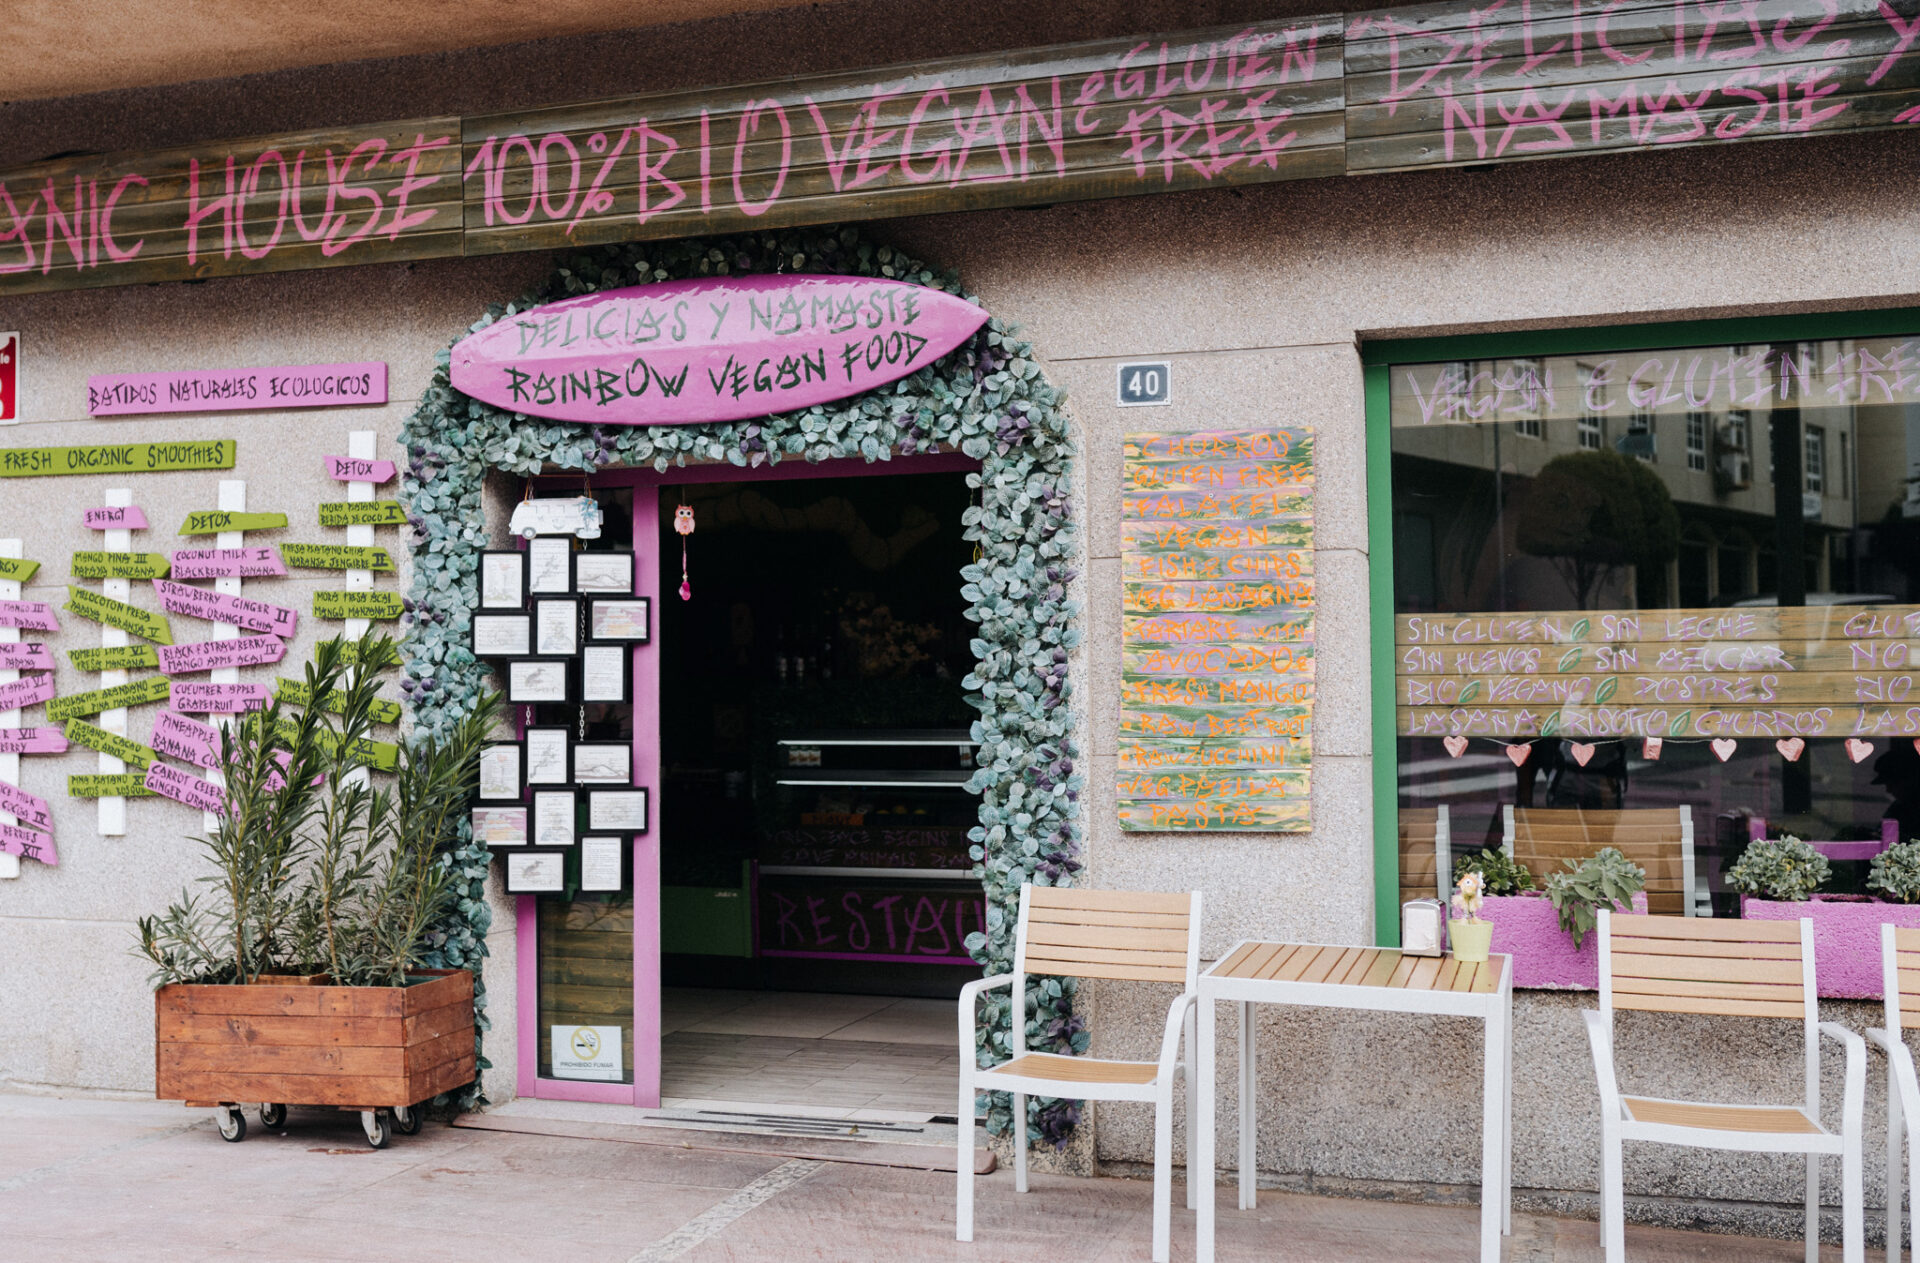 Der Eingang zum Delicias y Namaste Restaurant Fuerteventura mit 100% vegetarischen und veganen Gerichten